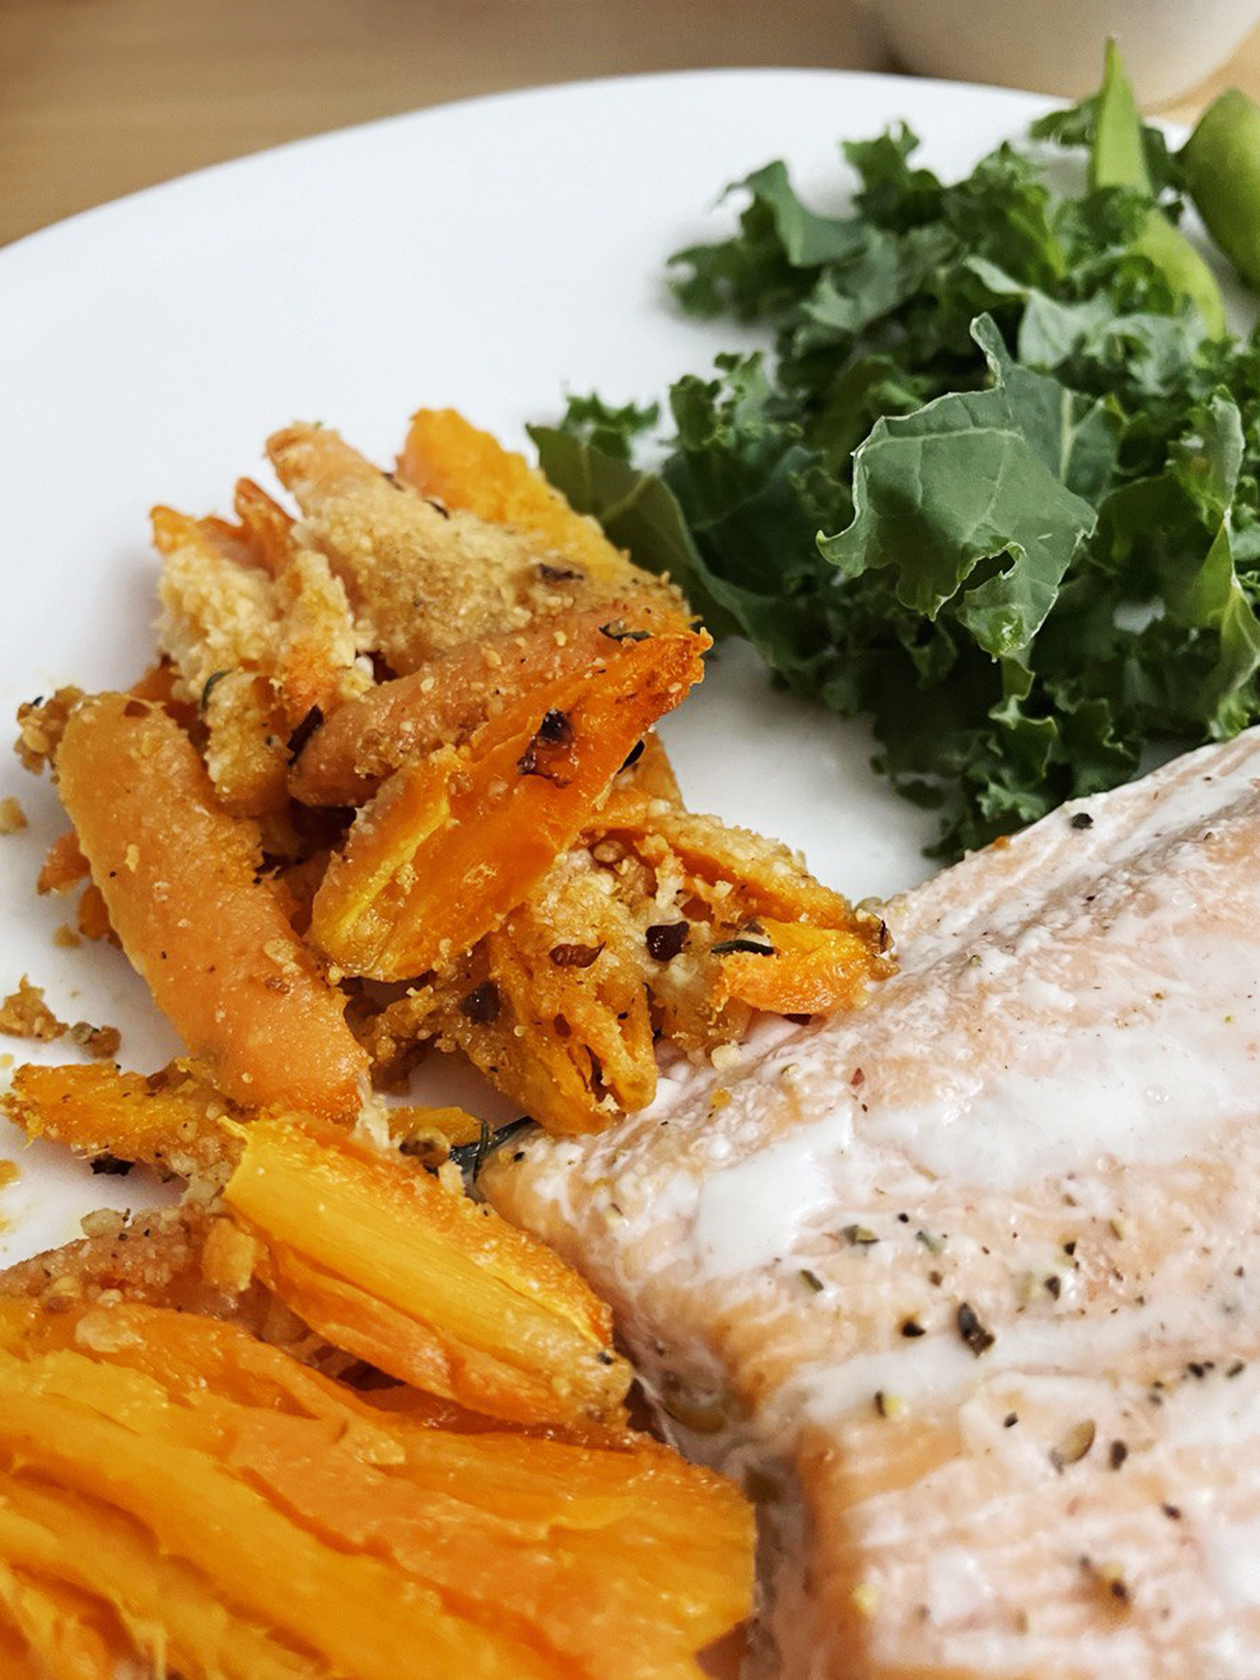 Еще один вариант ужина: опять лосось, капуста кейл и беби-морковь, запеченная с пармезаном, — рецепт я случайно нашла на «Амазоне»